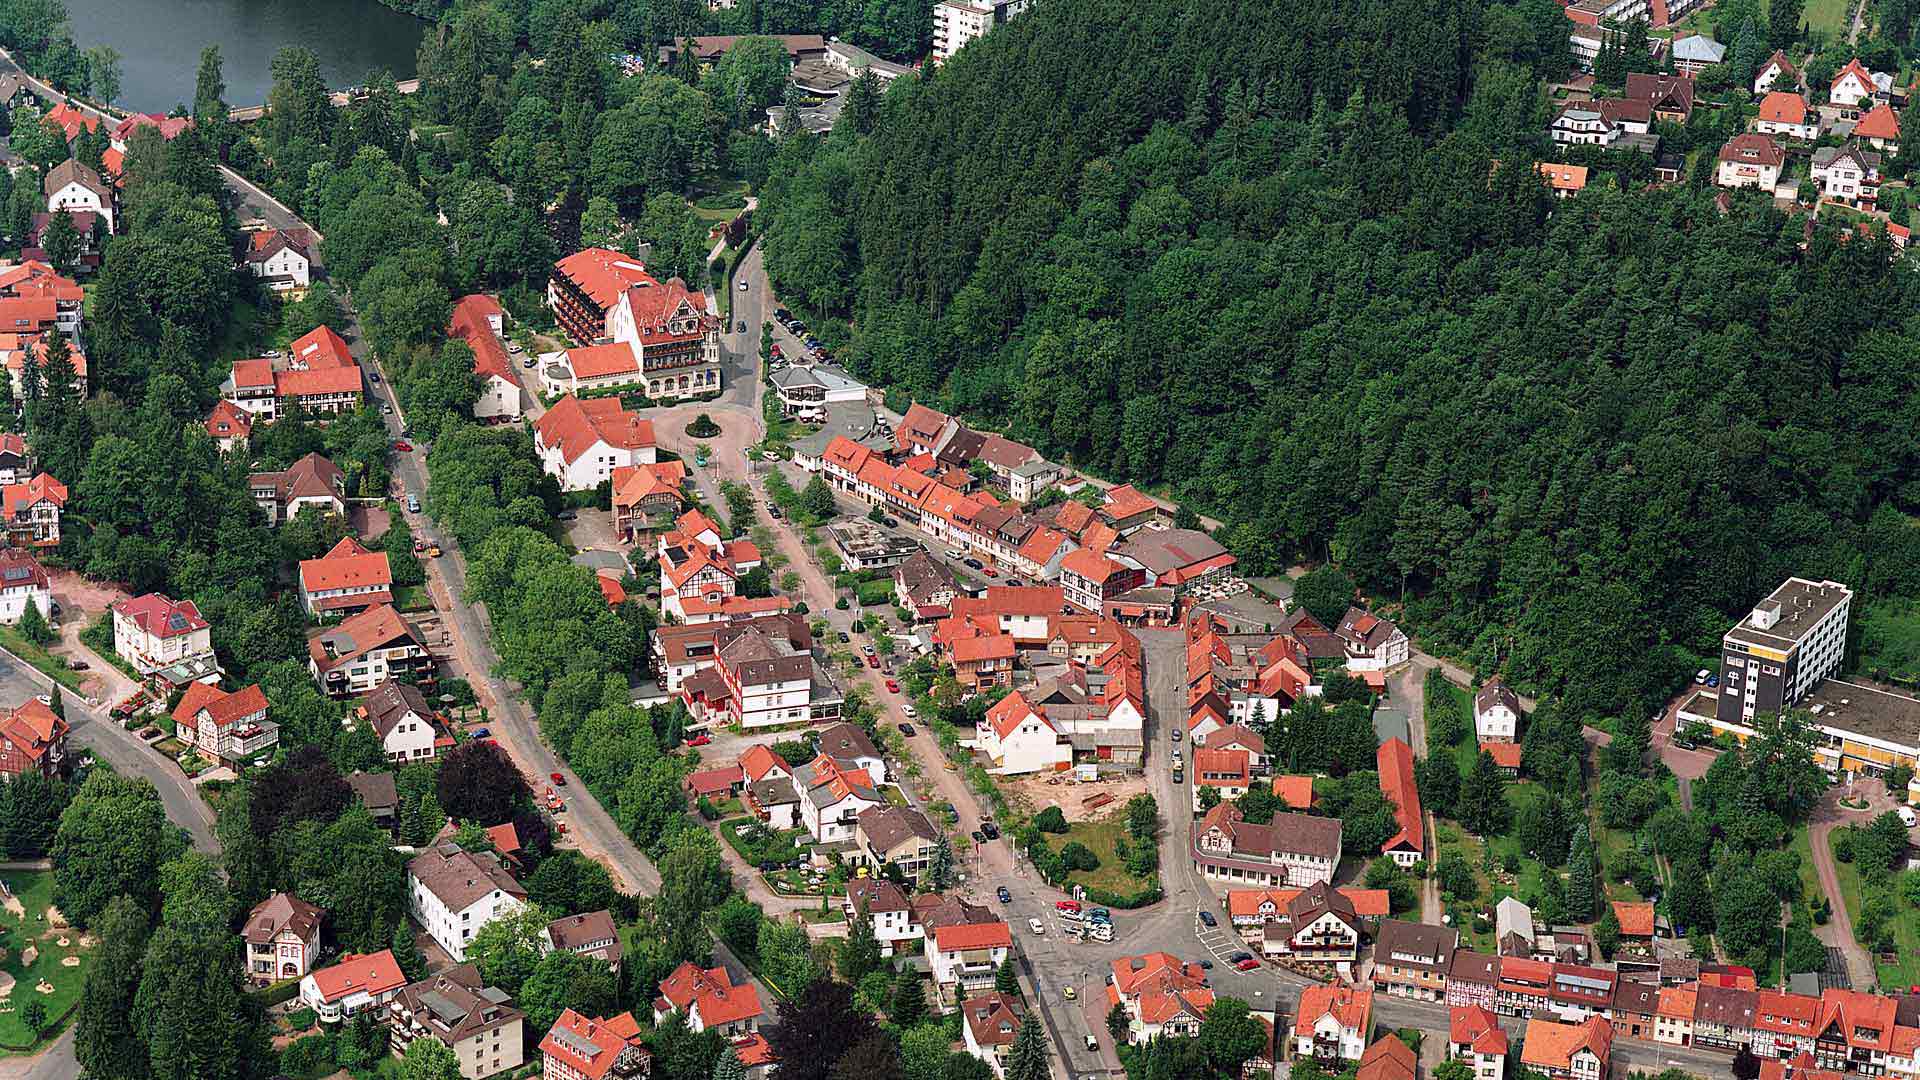 Luftbild von Bad Sachsa